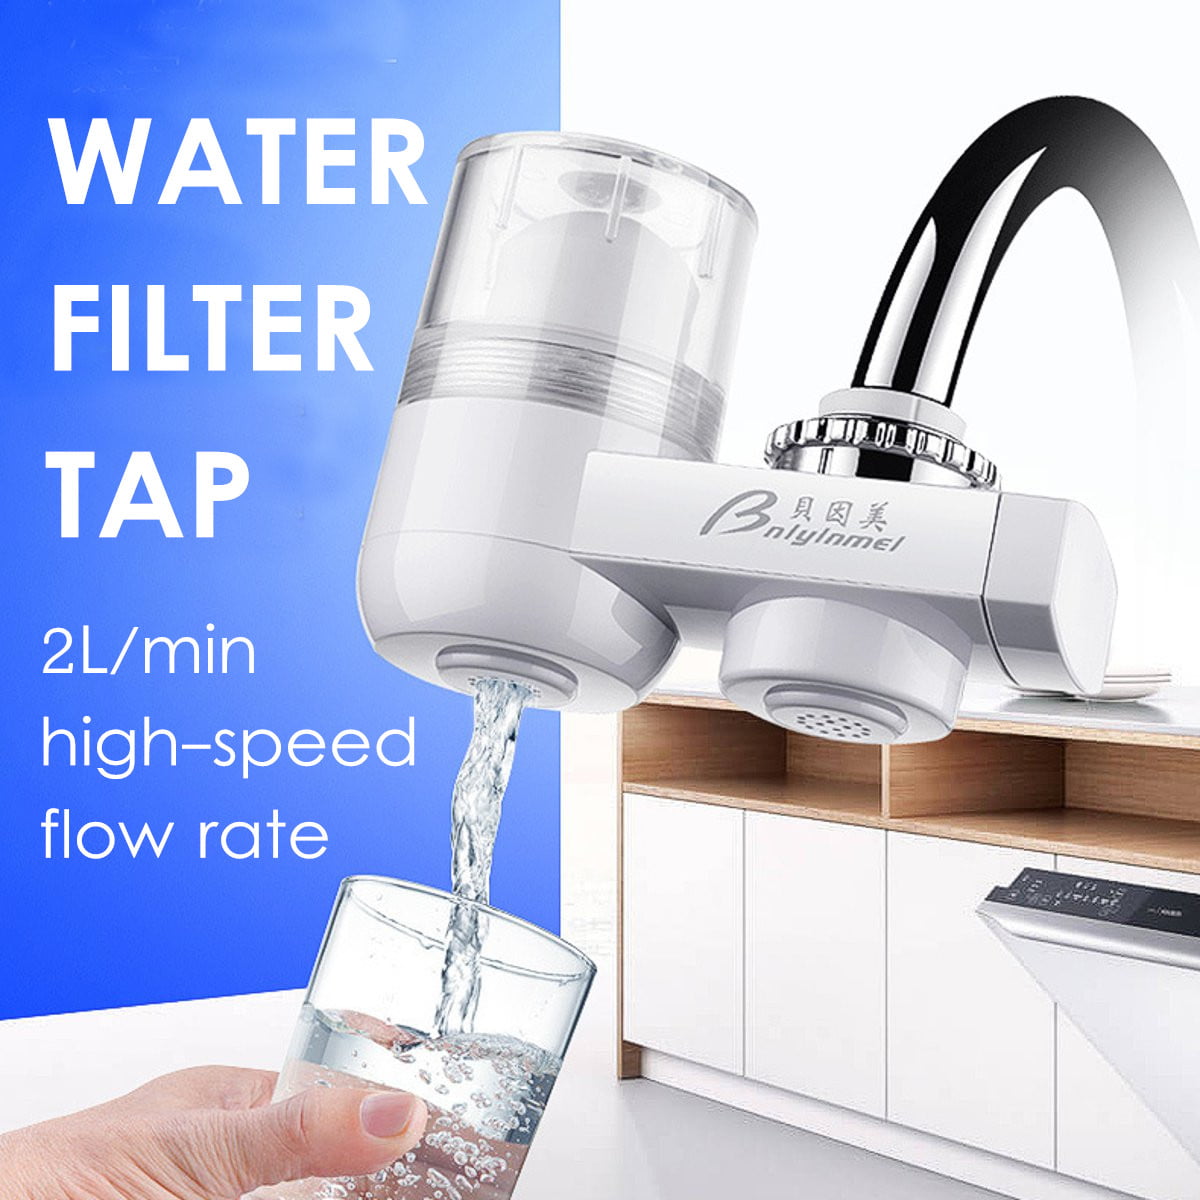 Смесители для очистки воды. Клин Ватер фильтр. Фильтр на кран для воды на кухню. Кран к фильтру для воды. Очиститель воды на кран для кухни.